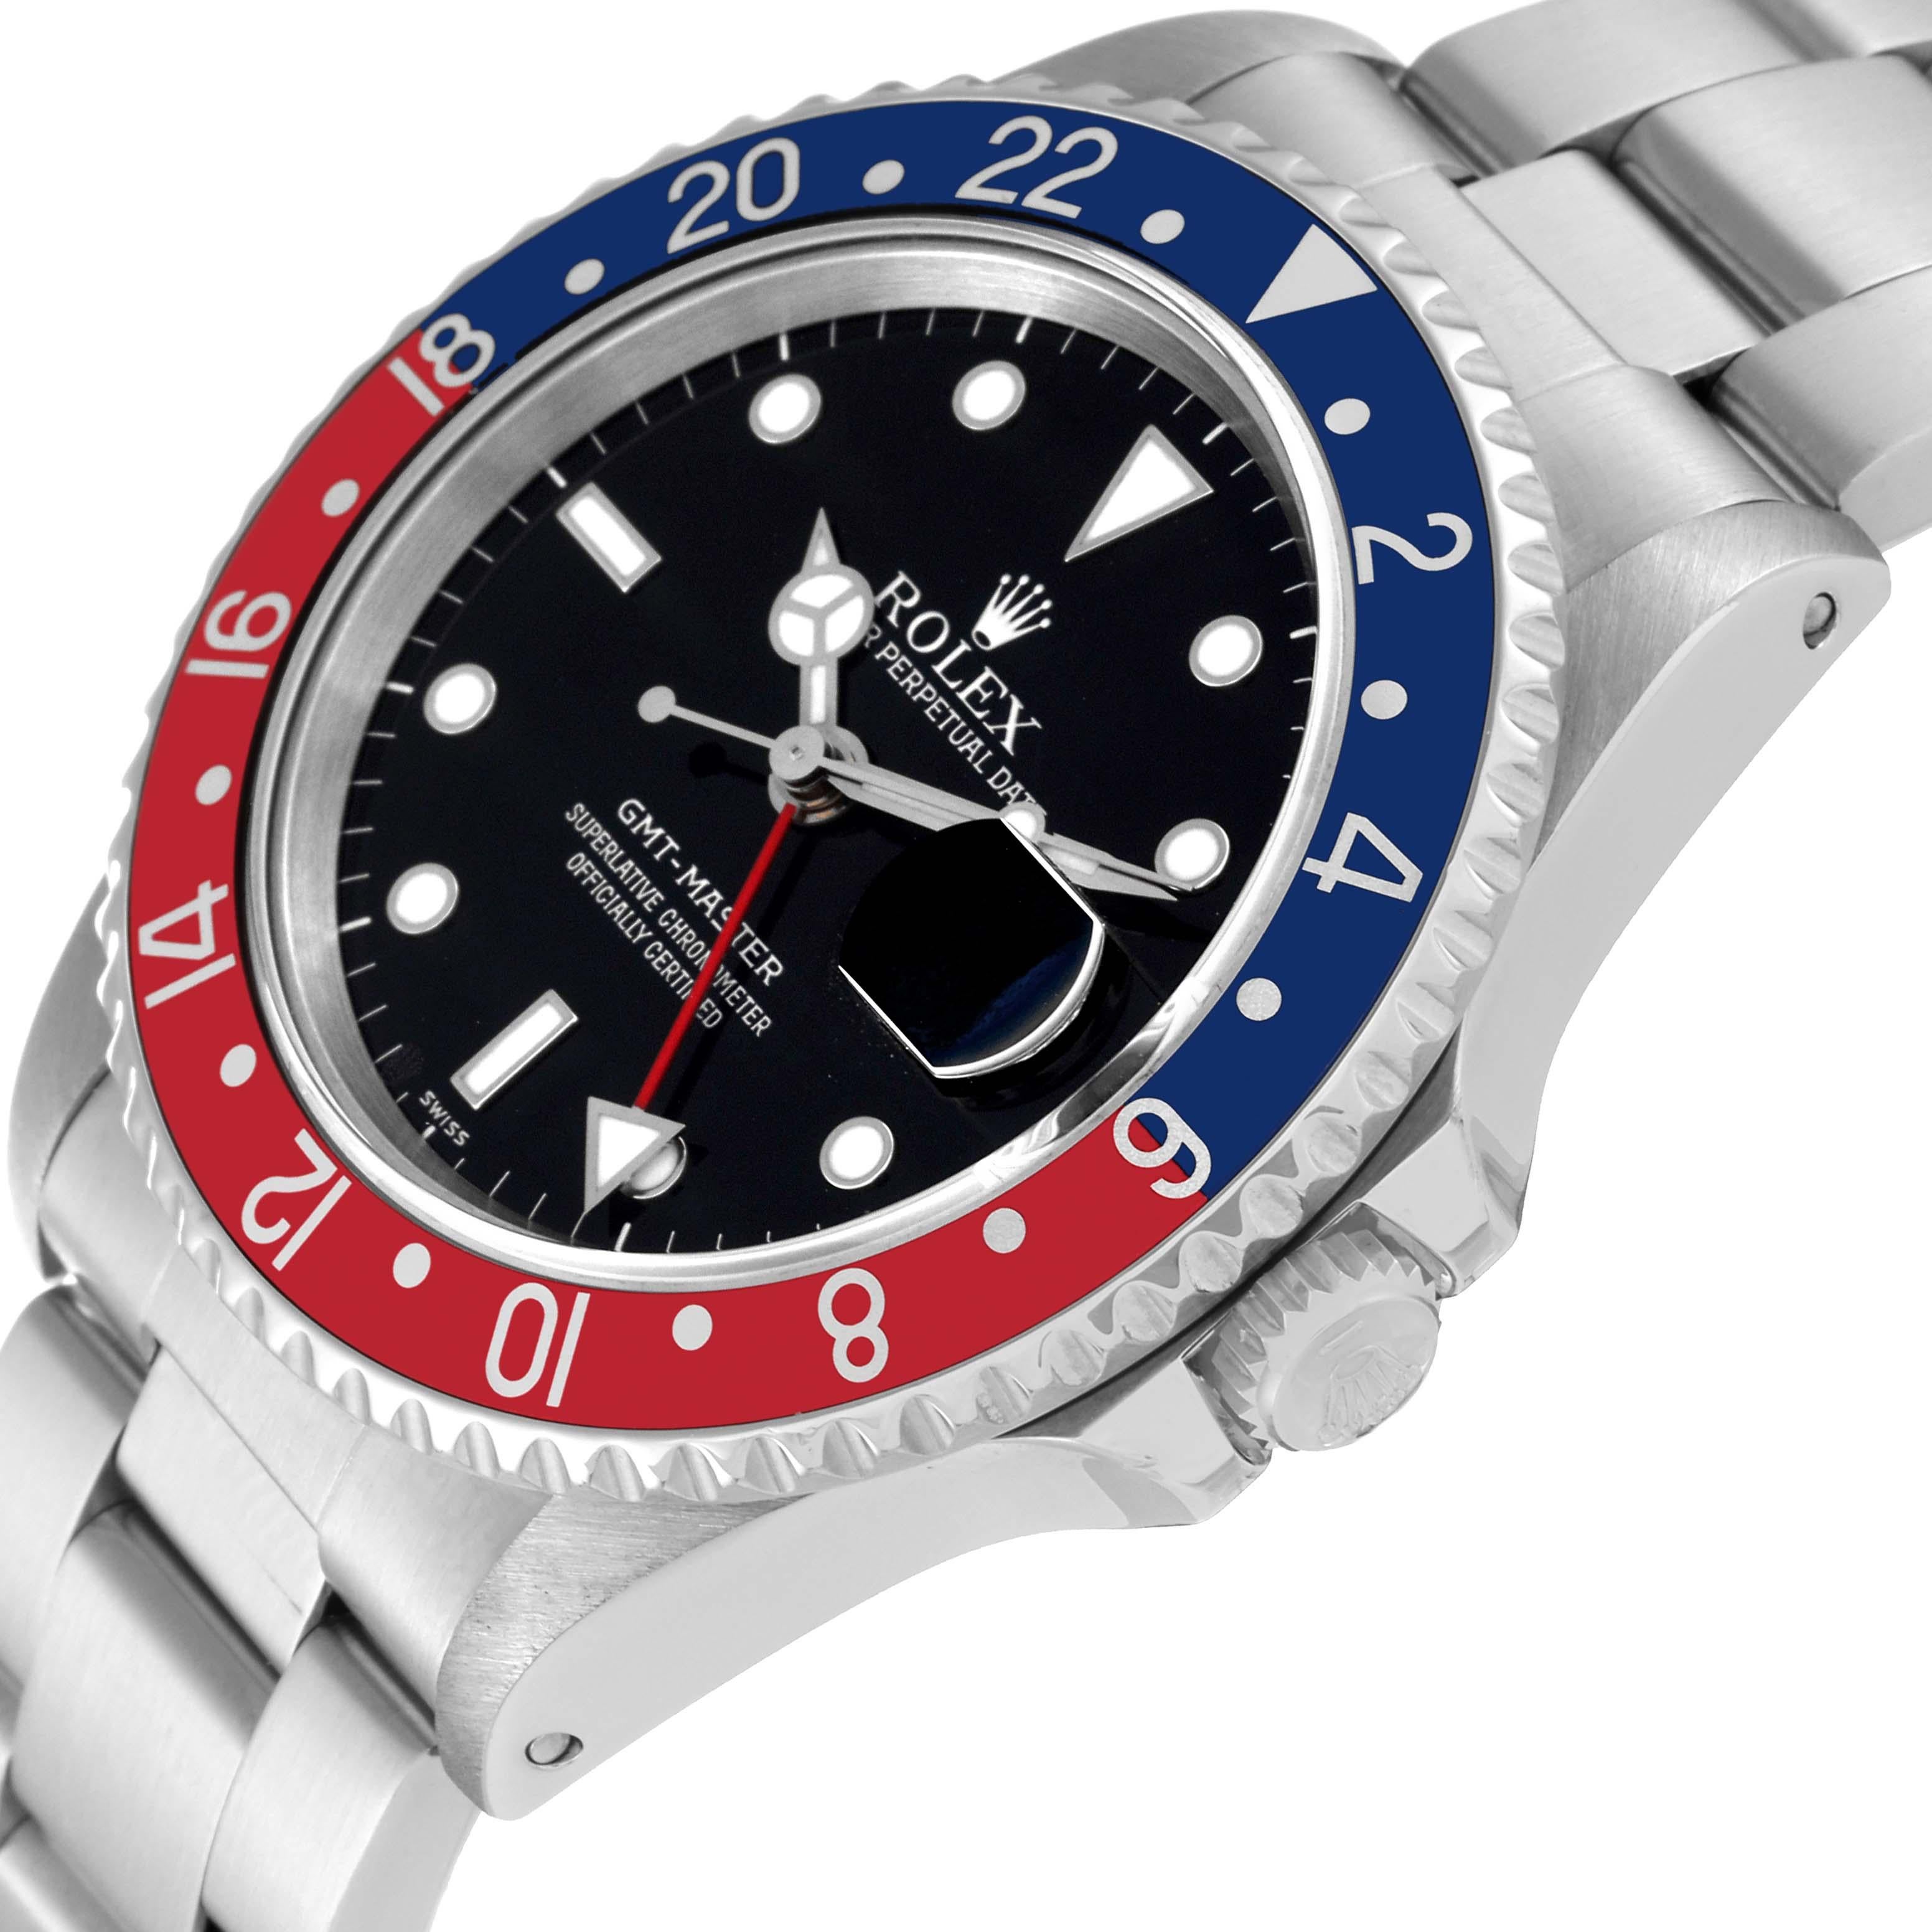 Rolex GMT Master 40 mm avec lunette Pepsi bleue et rouge, montre pour hommes 16700 1